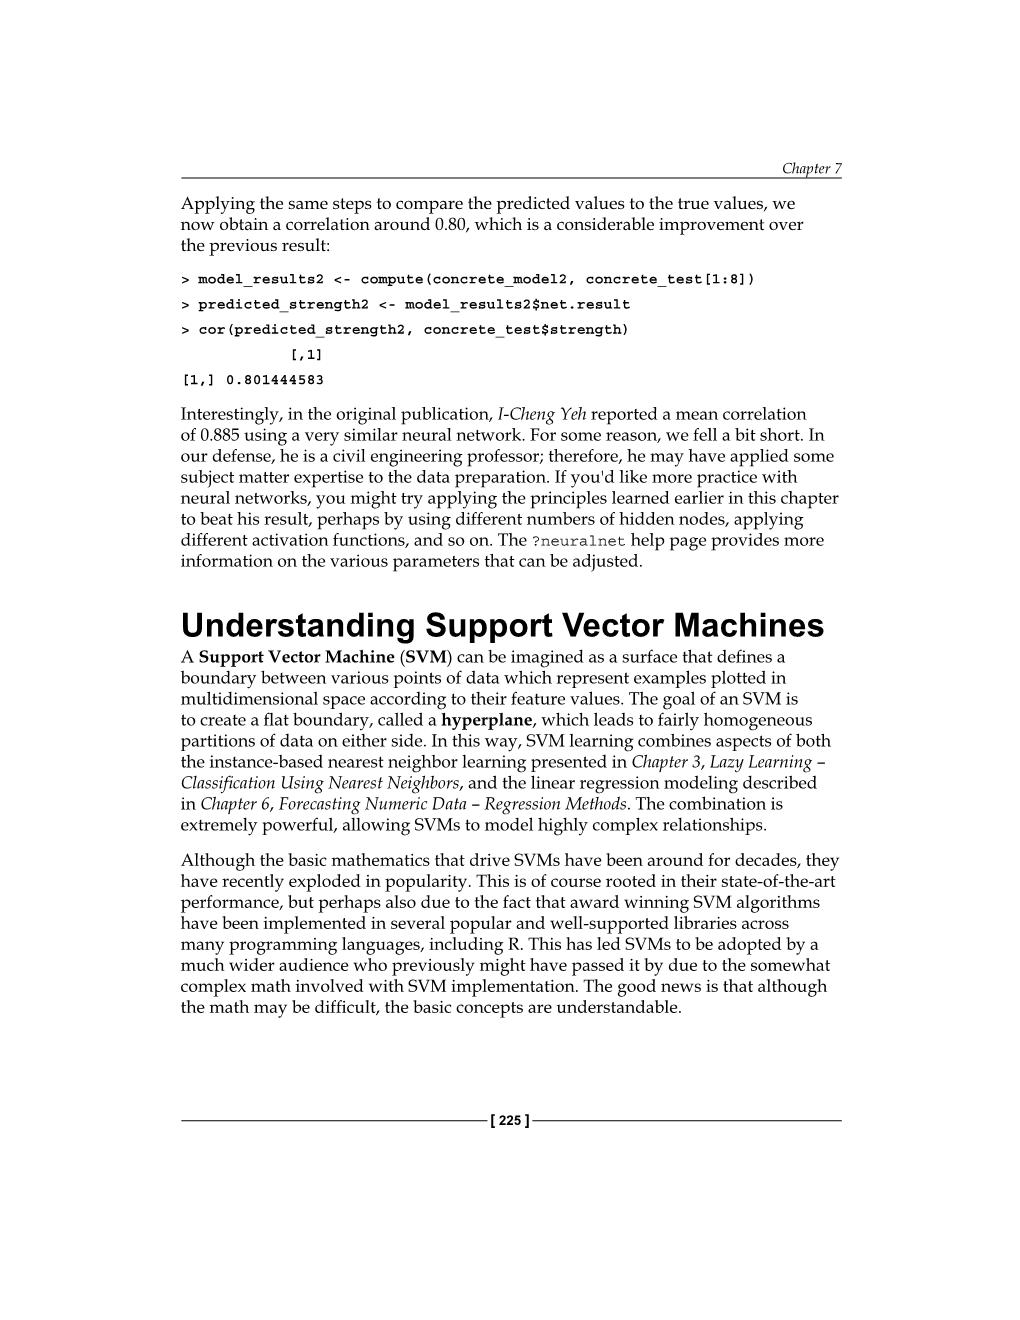 Understanding Support Vector Machines